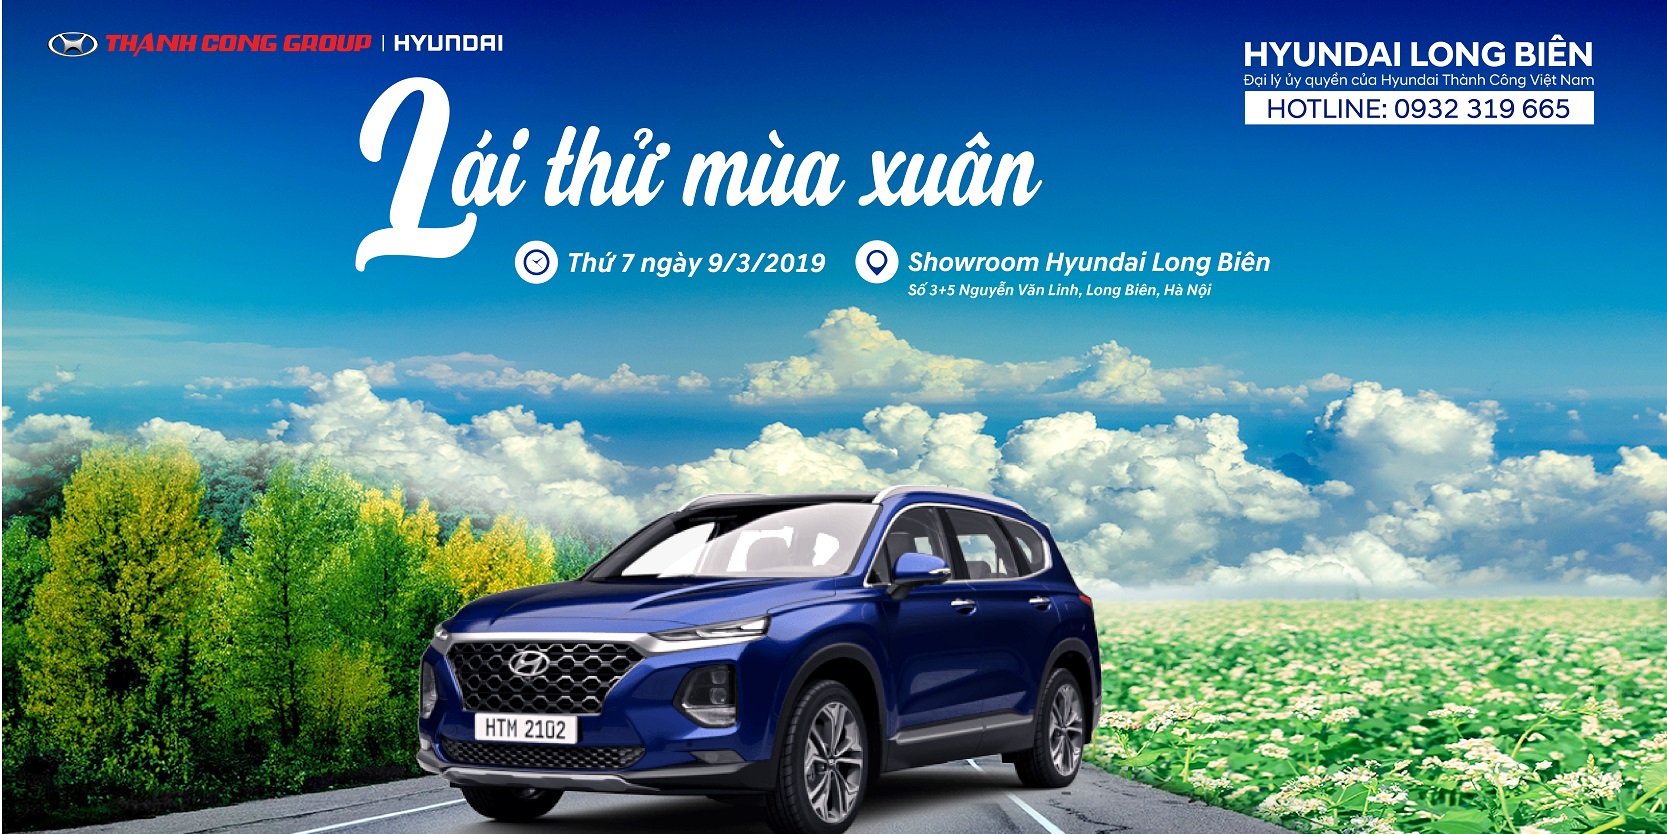 Chương trình Roadshow và ''LÁI THỬ MÙA XUÂN" tại Showroom Hyundai Long Biên, thứ 7, ngày 09/03/2019